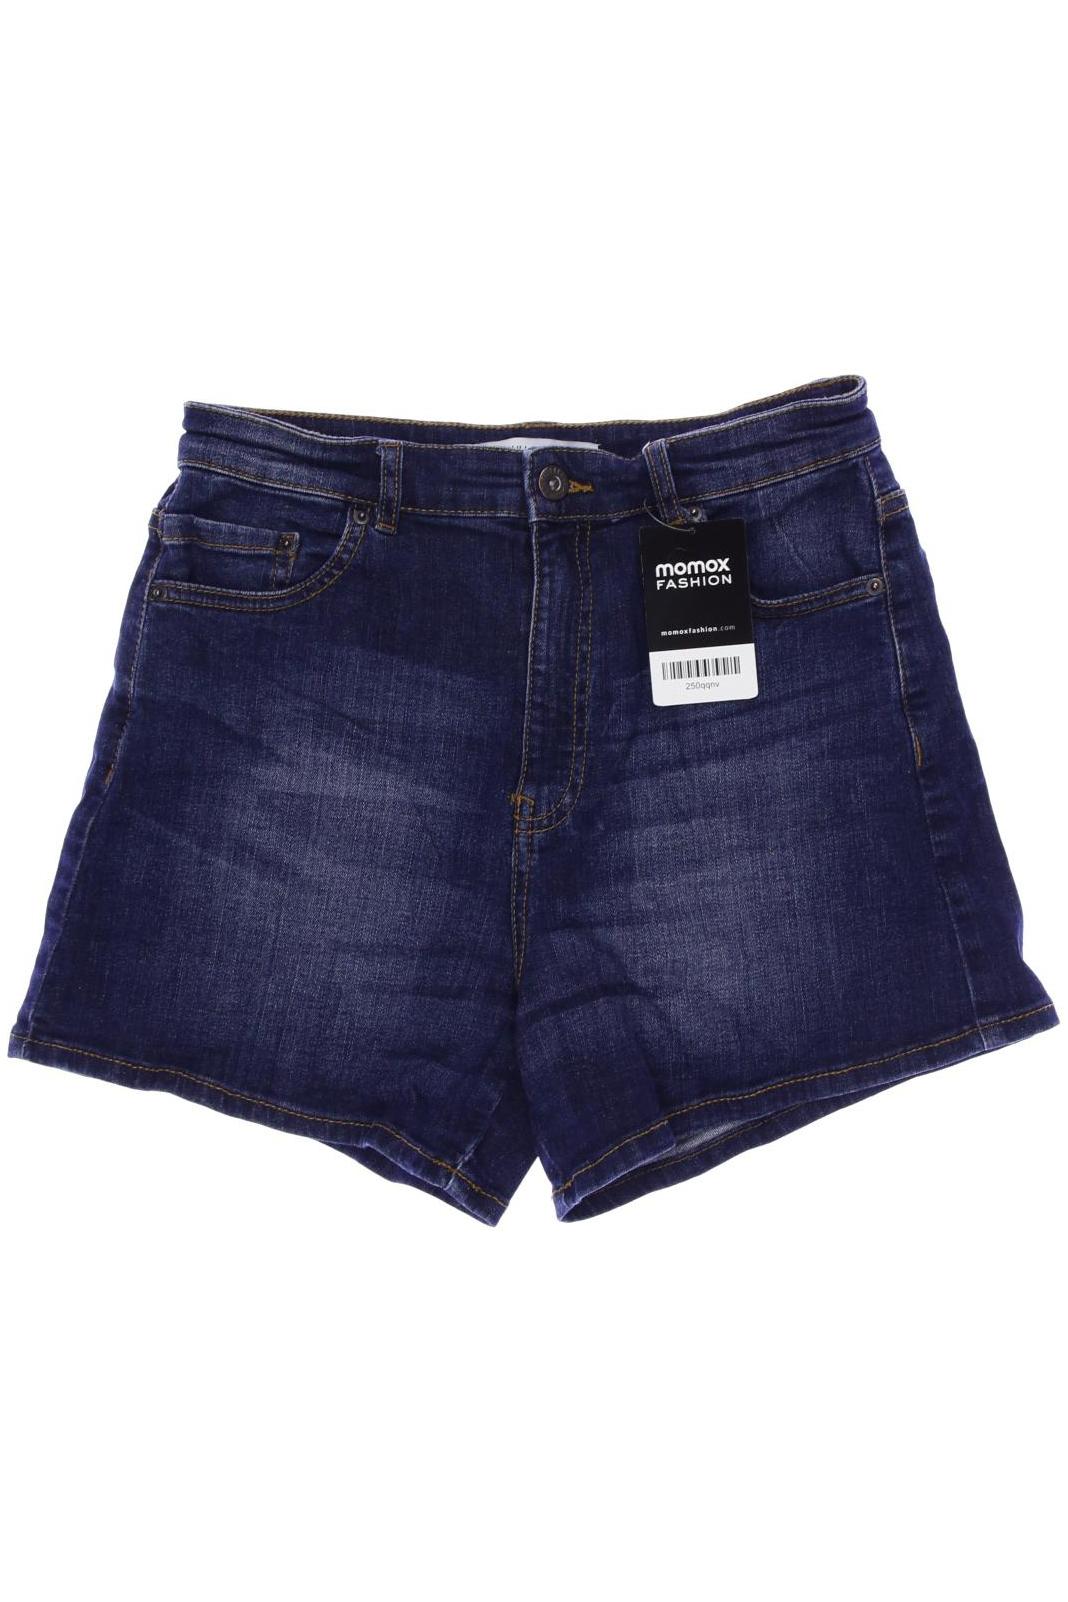 Pull & Bear Damen Shorts, marineblau von Pull & Bear